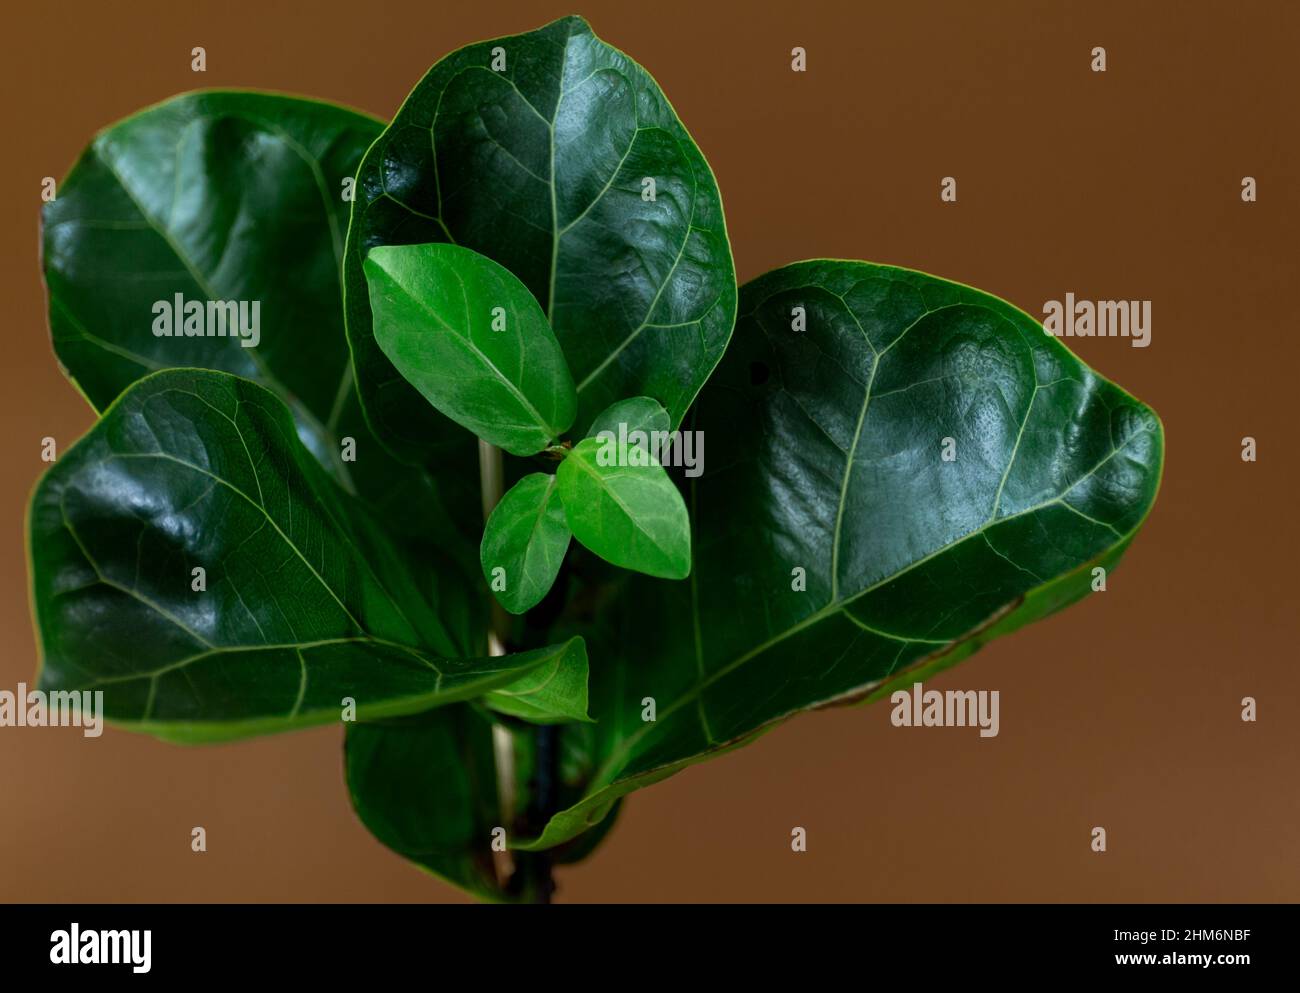 Nahaufnahme des grünen Blattes von Ficus lyrata oder Fiddle Leaf Fig auf braunem Hintergrund. Innengarten, Hauspflanzenpflege Stockfoto